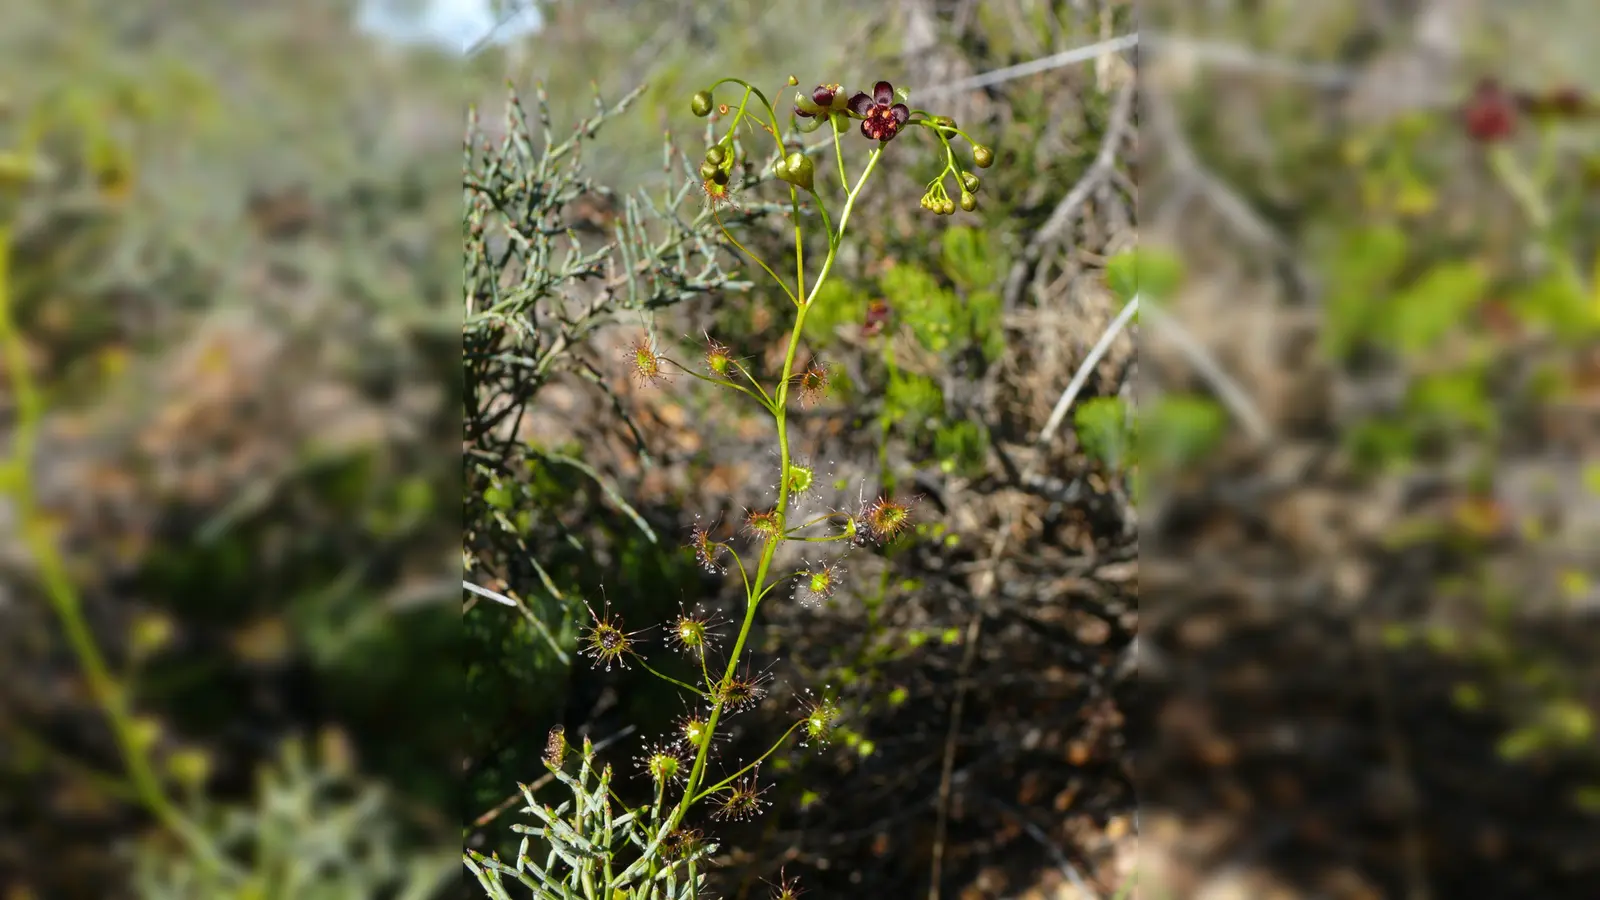 Die neue entdeckte Art Drosera atrata (Schwarzer Sonnentau). Ein deutsch-australisches Wissenschaftsteam hat neue fleischfressende Pflanzen entdeckt - mit Hilfe des Internets. (Foto: Andreas Fleischmann/SNSB-BSM/dpa)